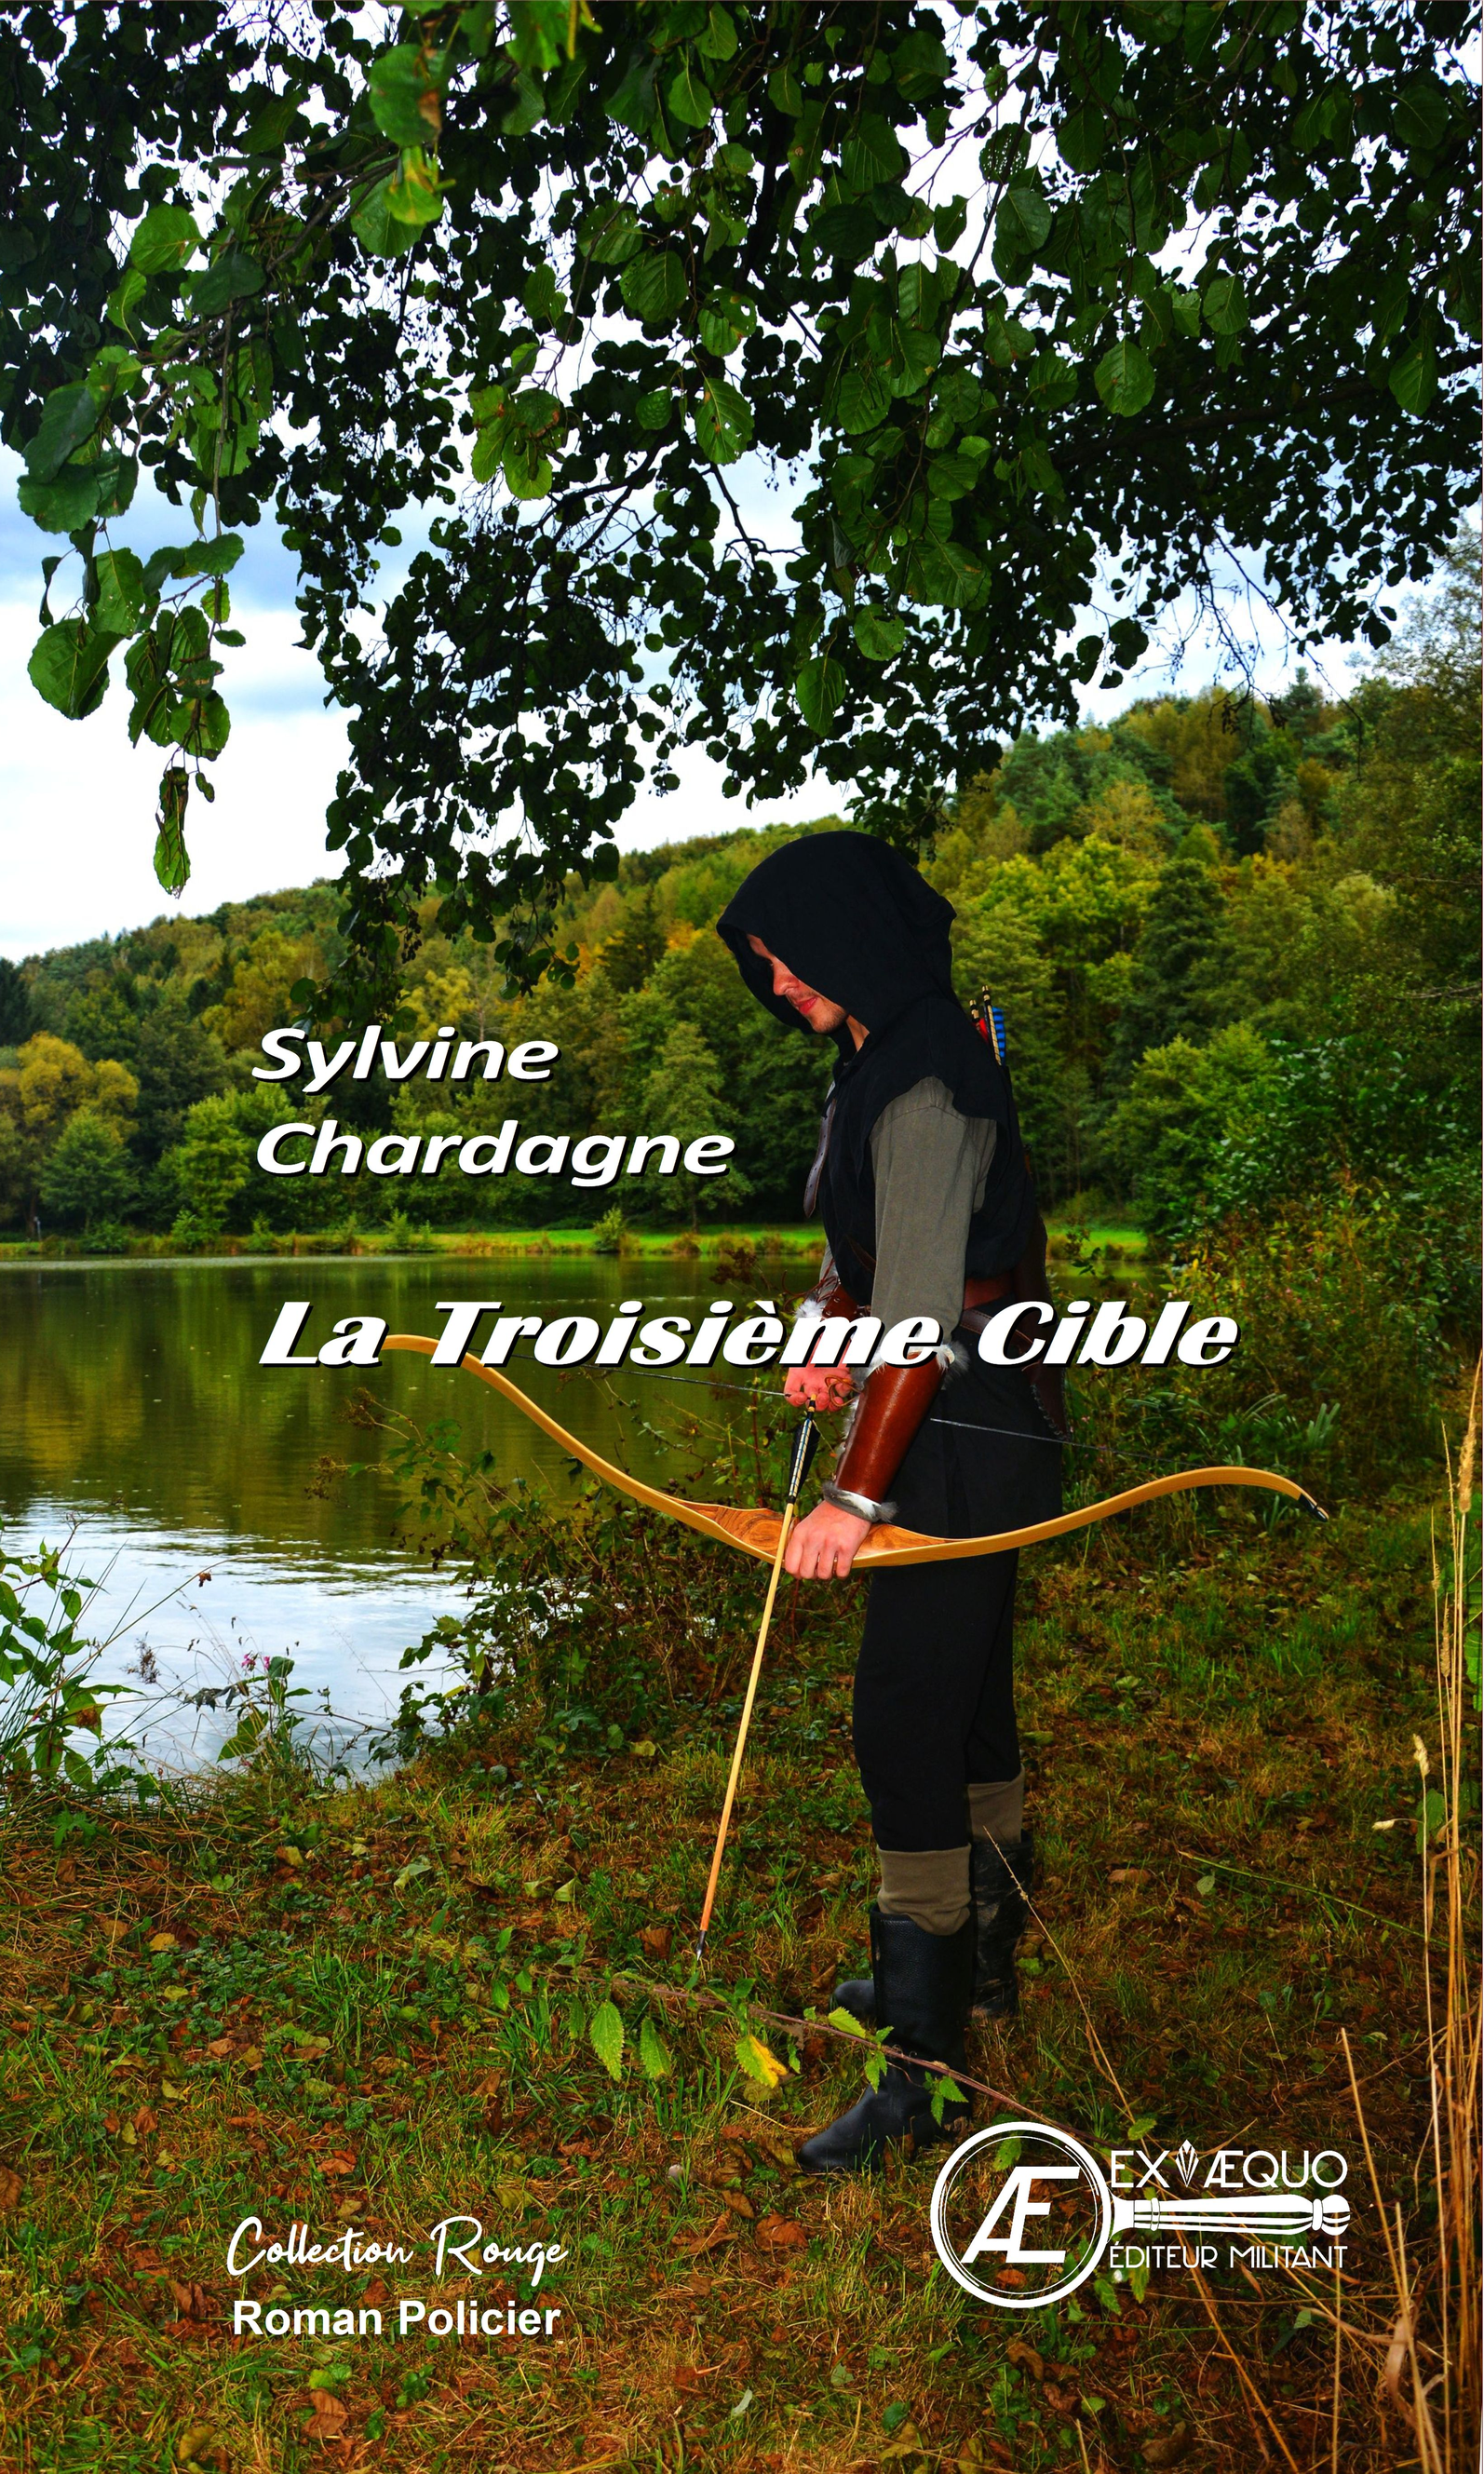 You are currently viewing La troisième cible, de Sylvine Chardagne